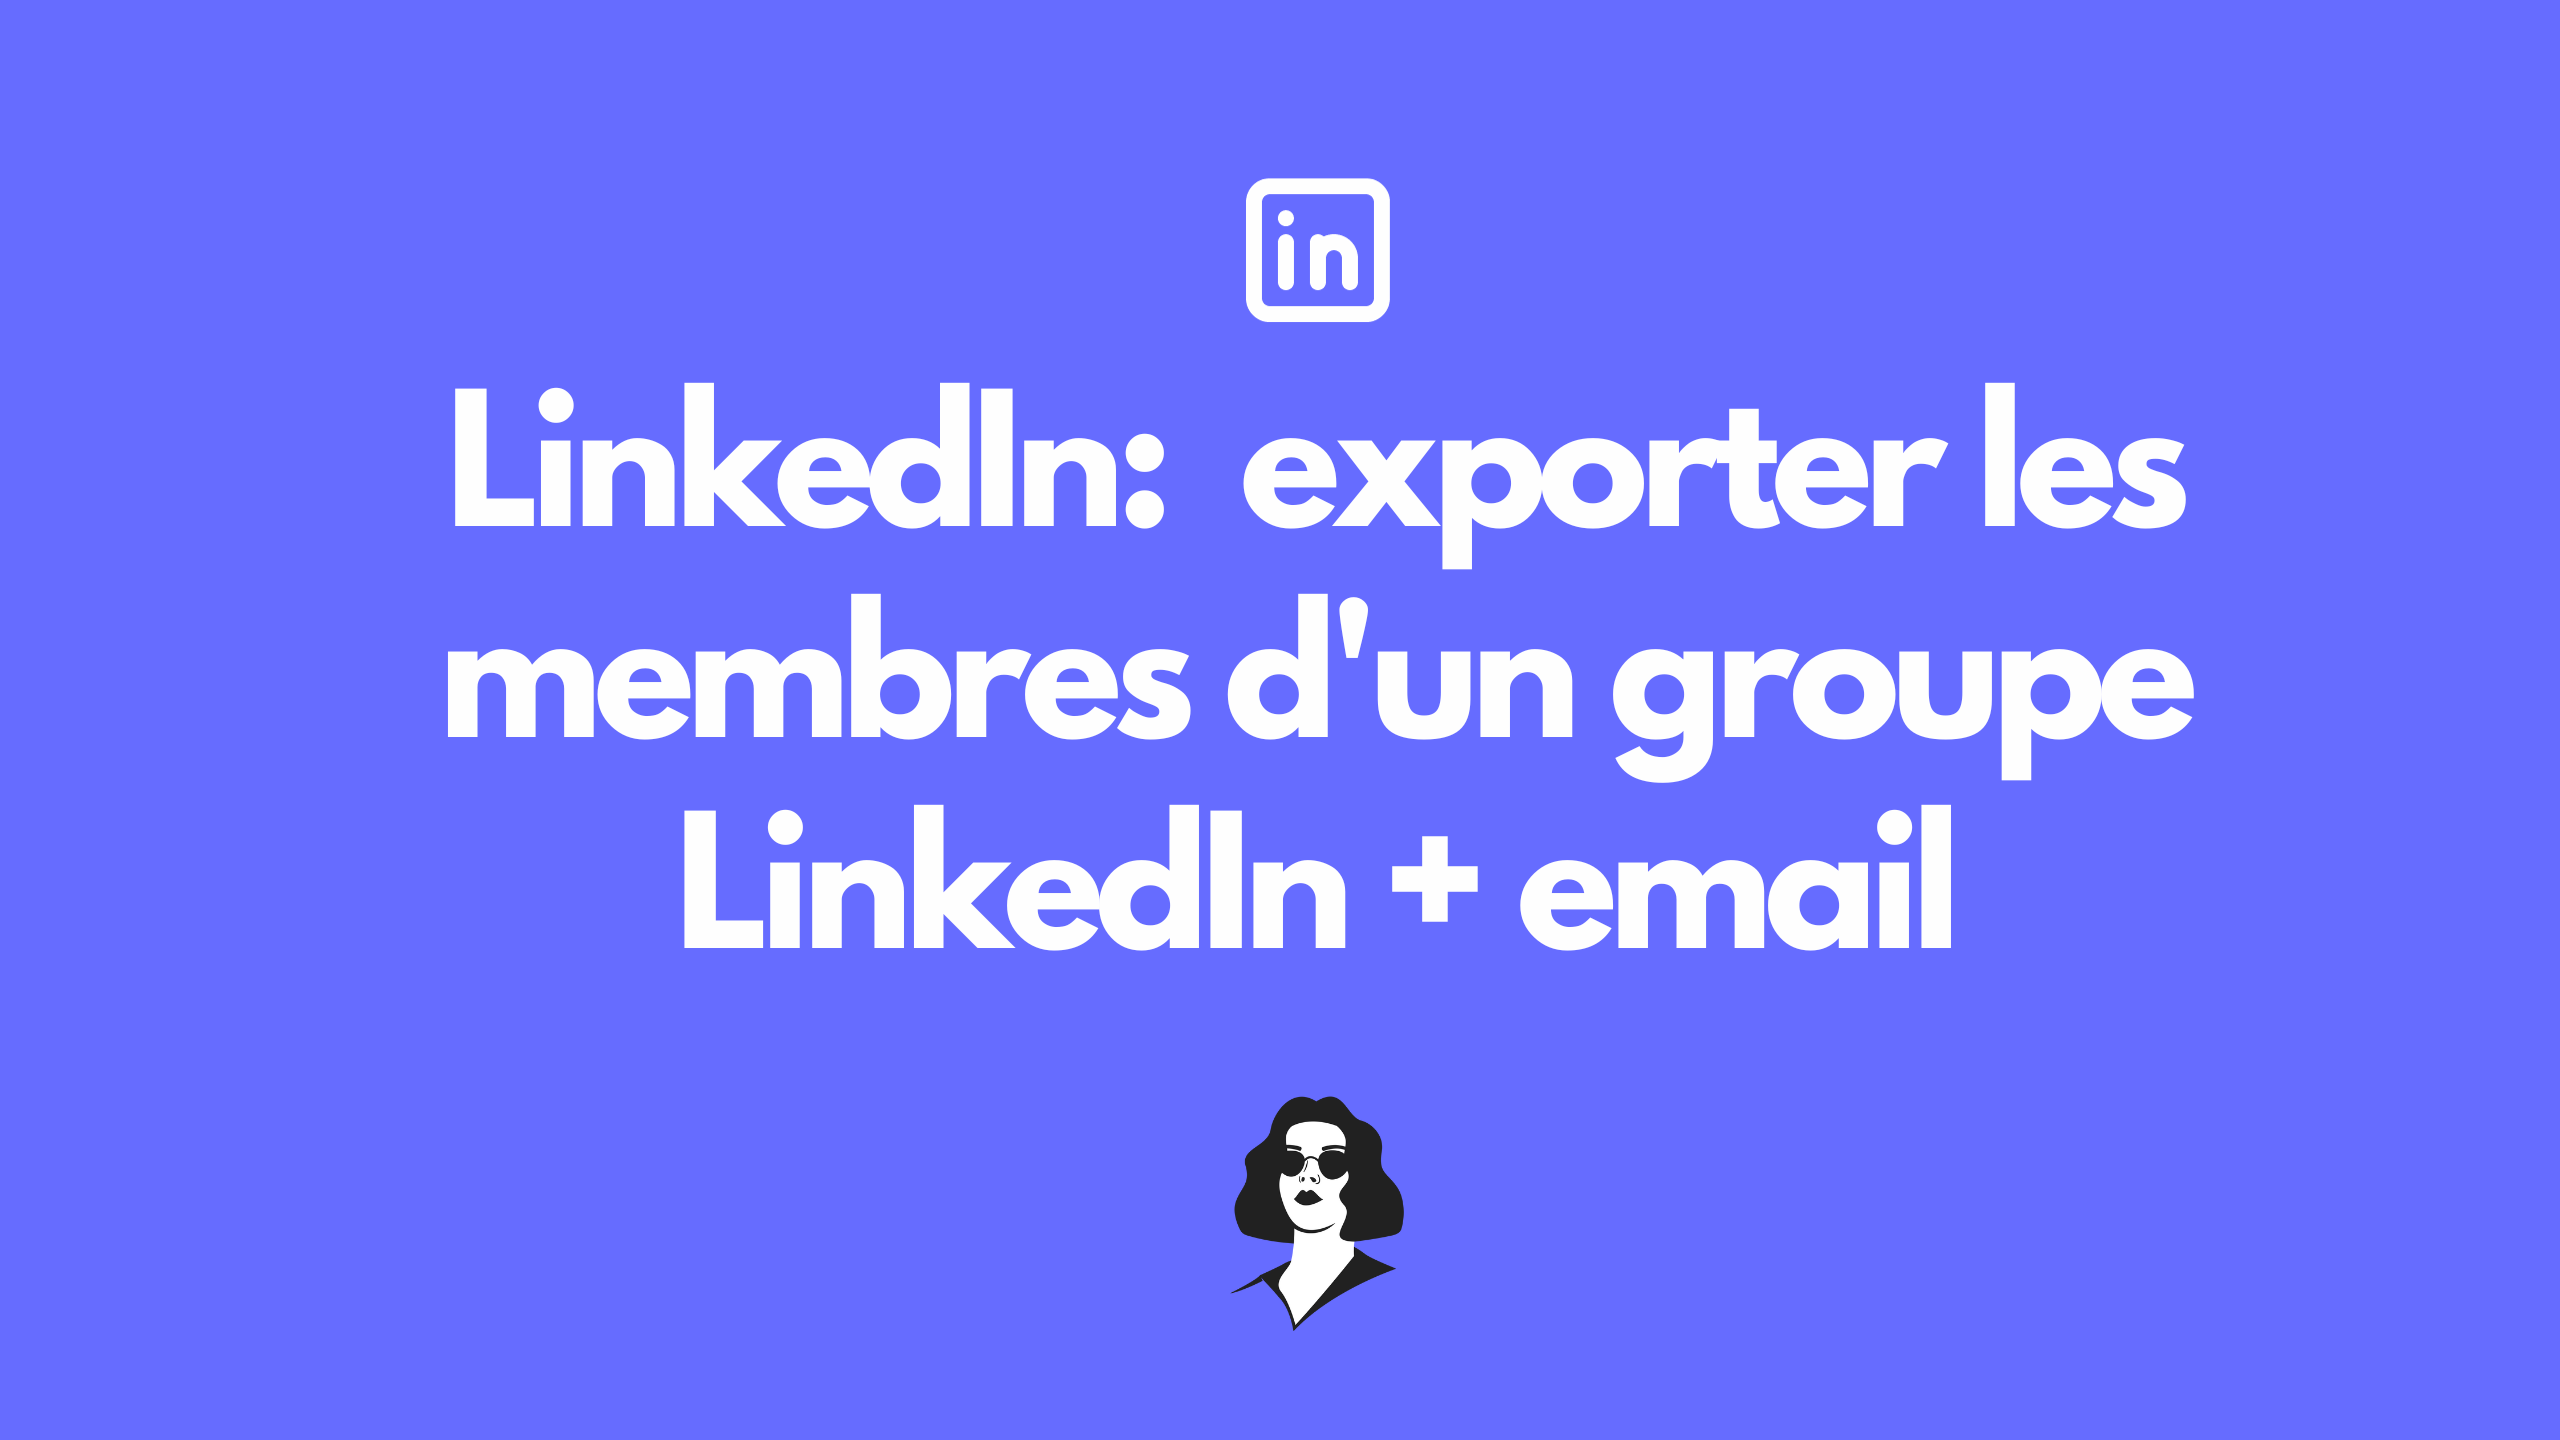 exporter les membres d'un groupe LinkedIn + leur email